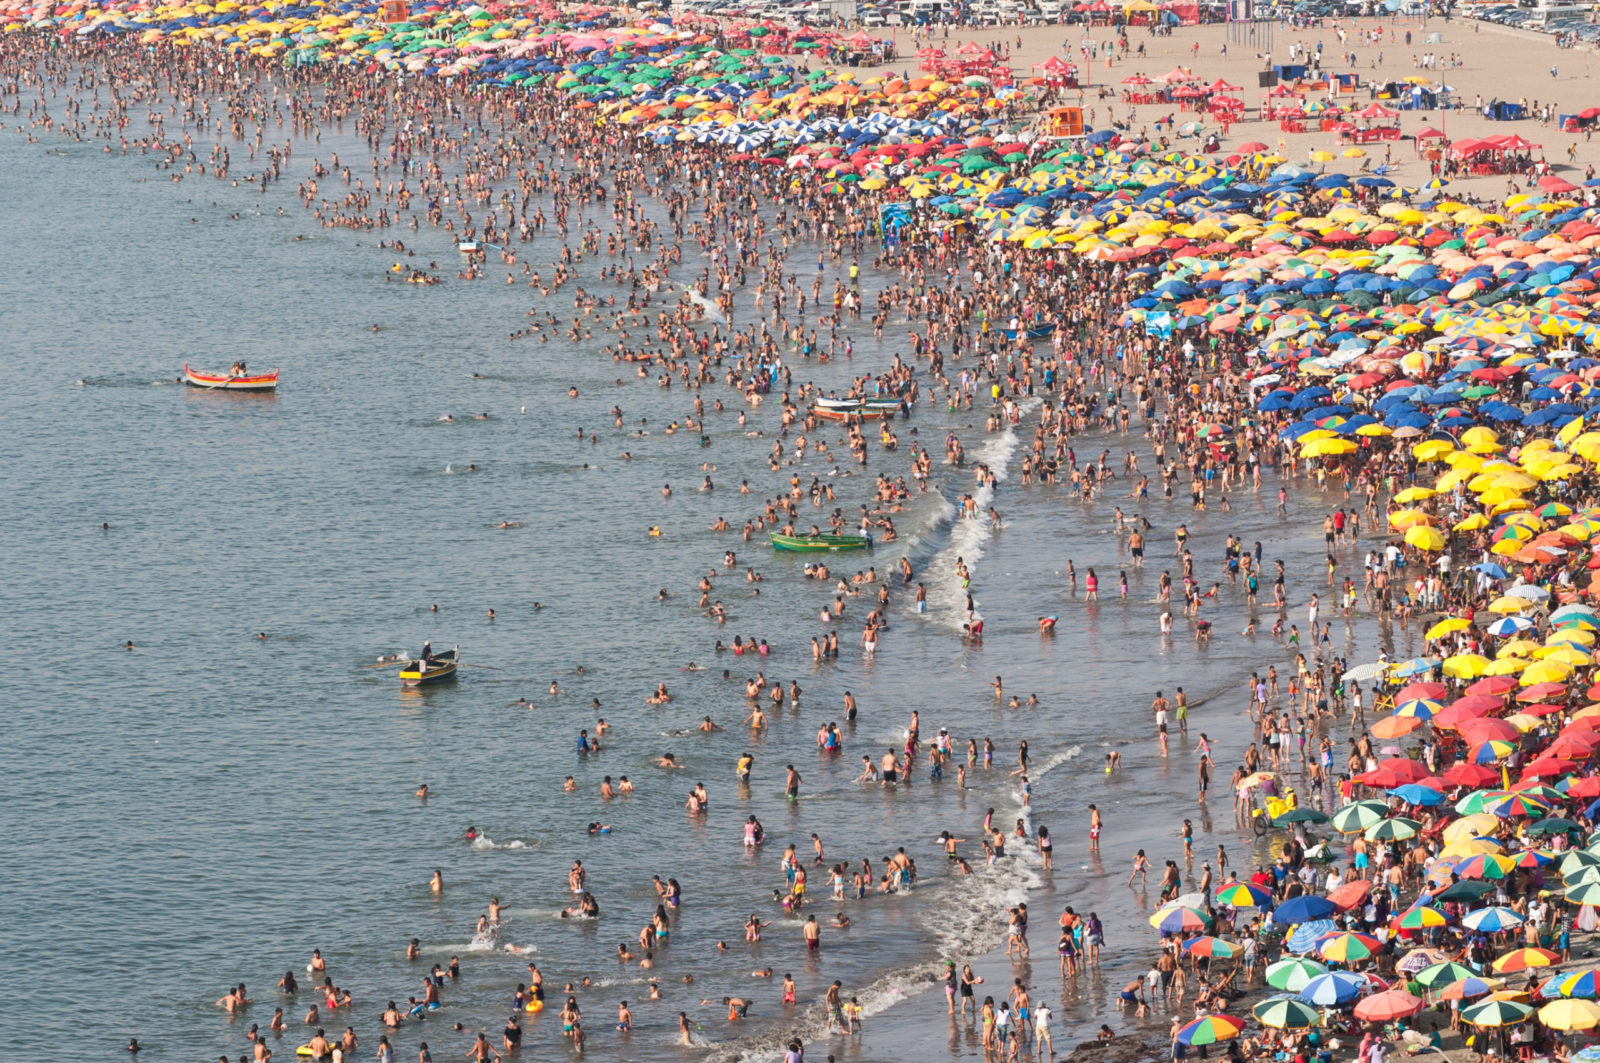 crowded-beach-scaled-e1588882094948.jpeg